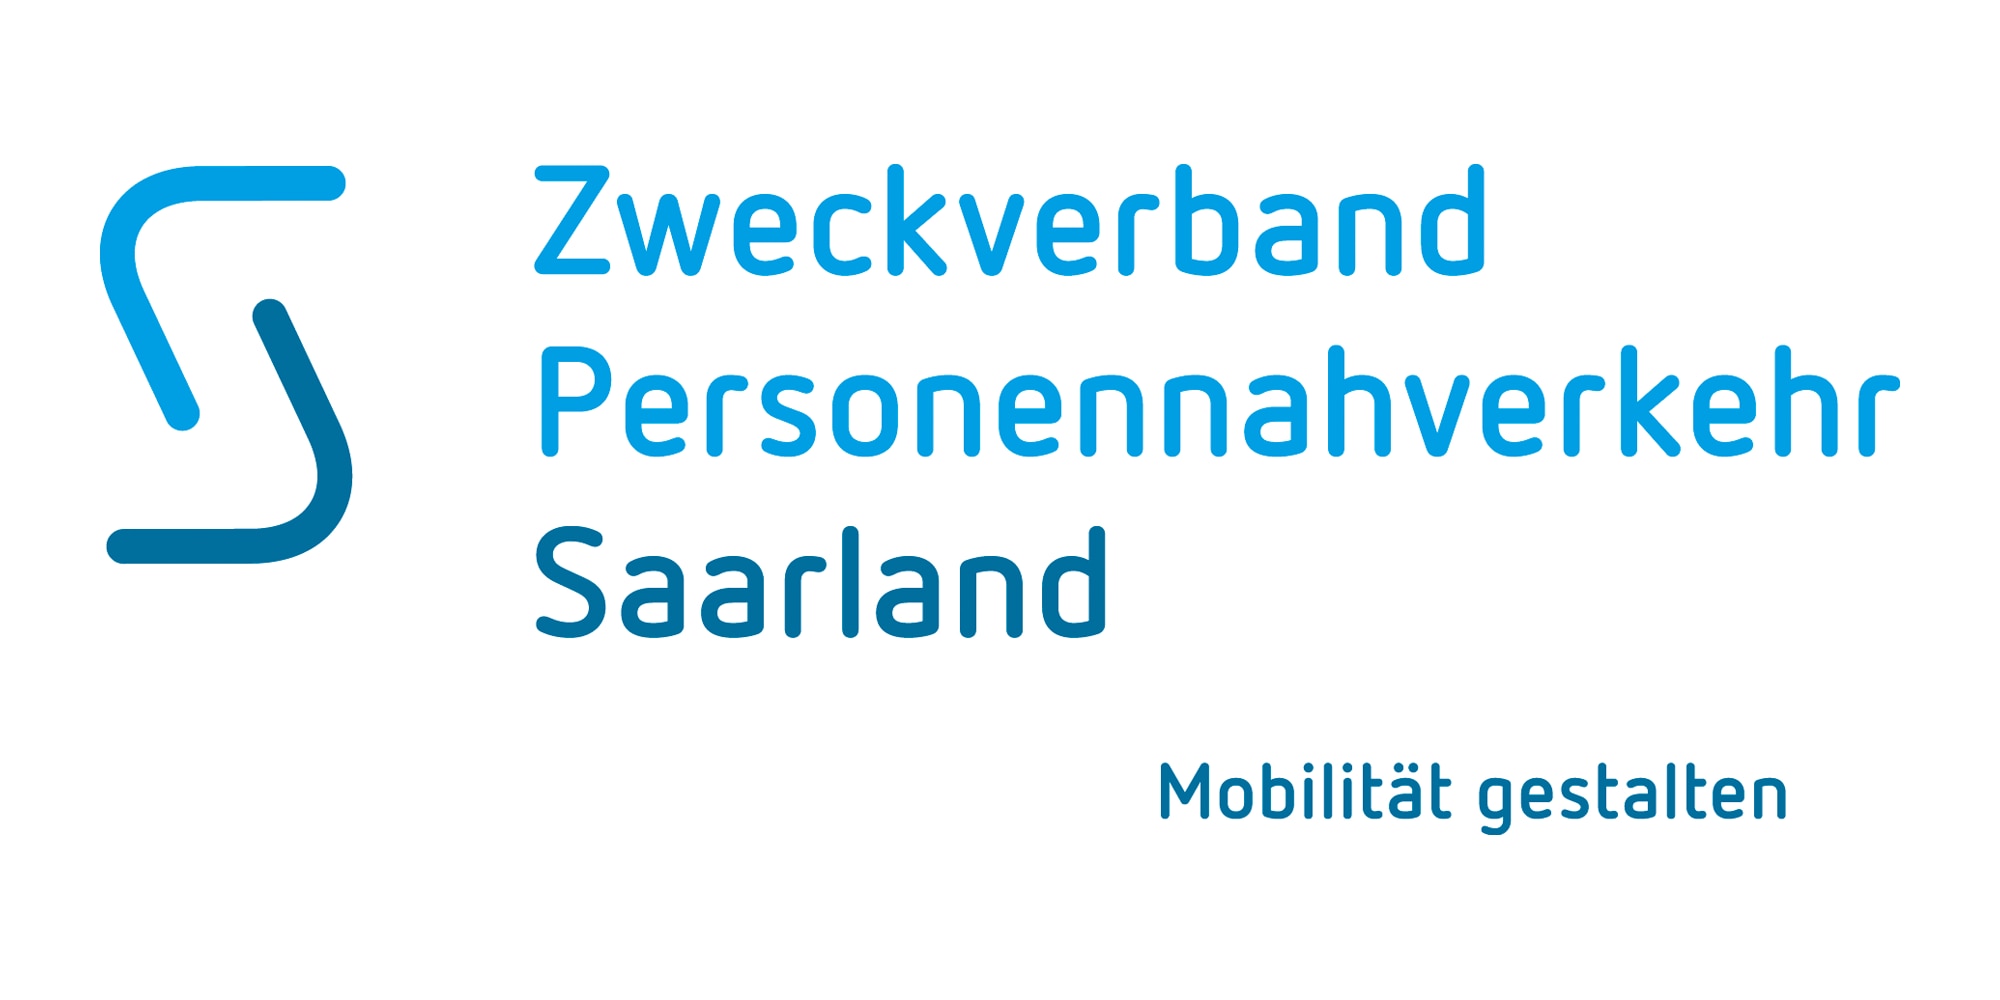 Zweckverband Personennahverkehr Saarland